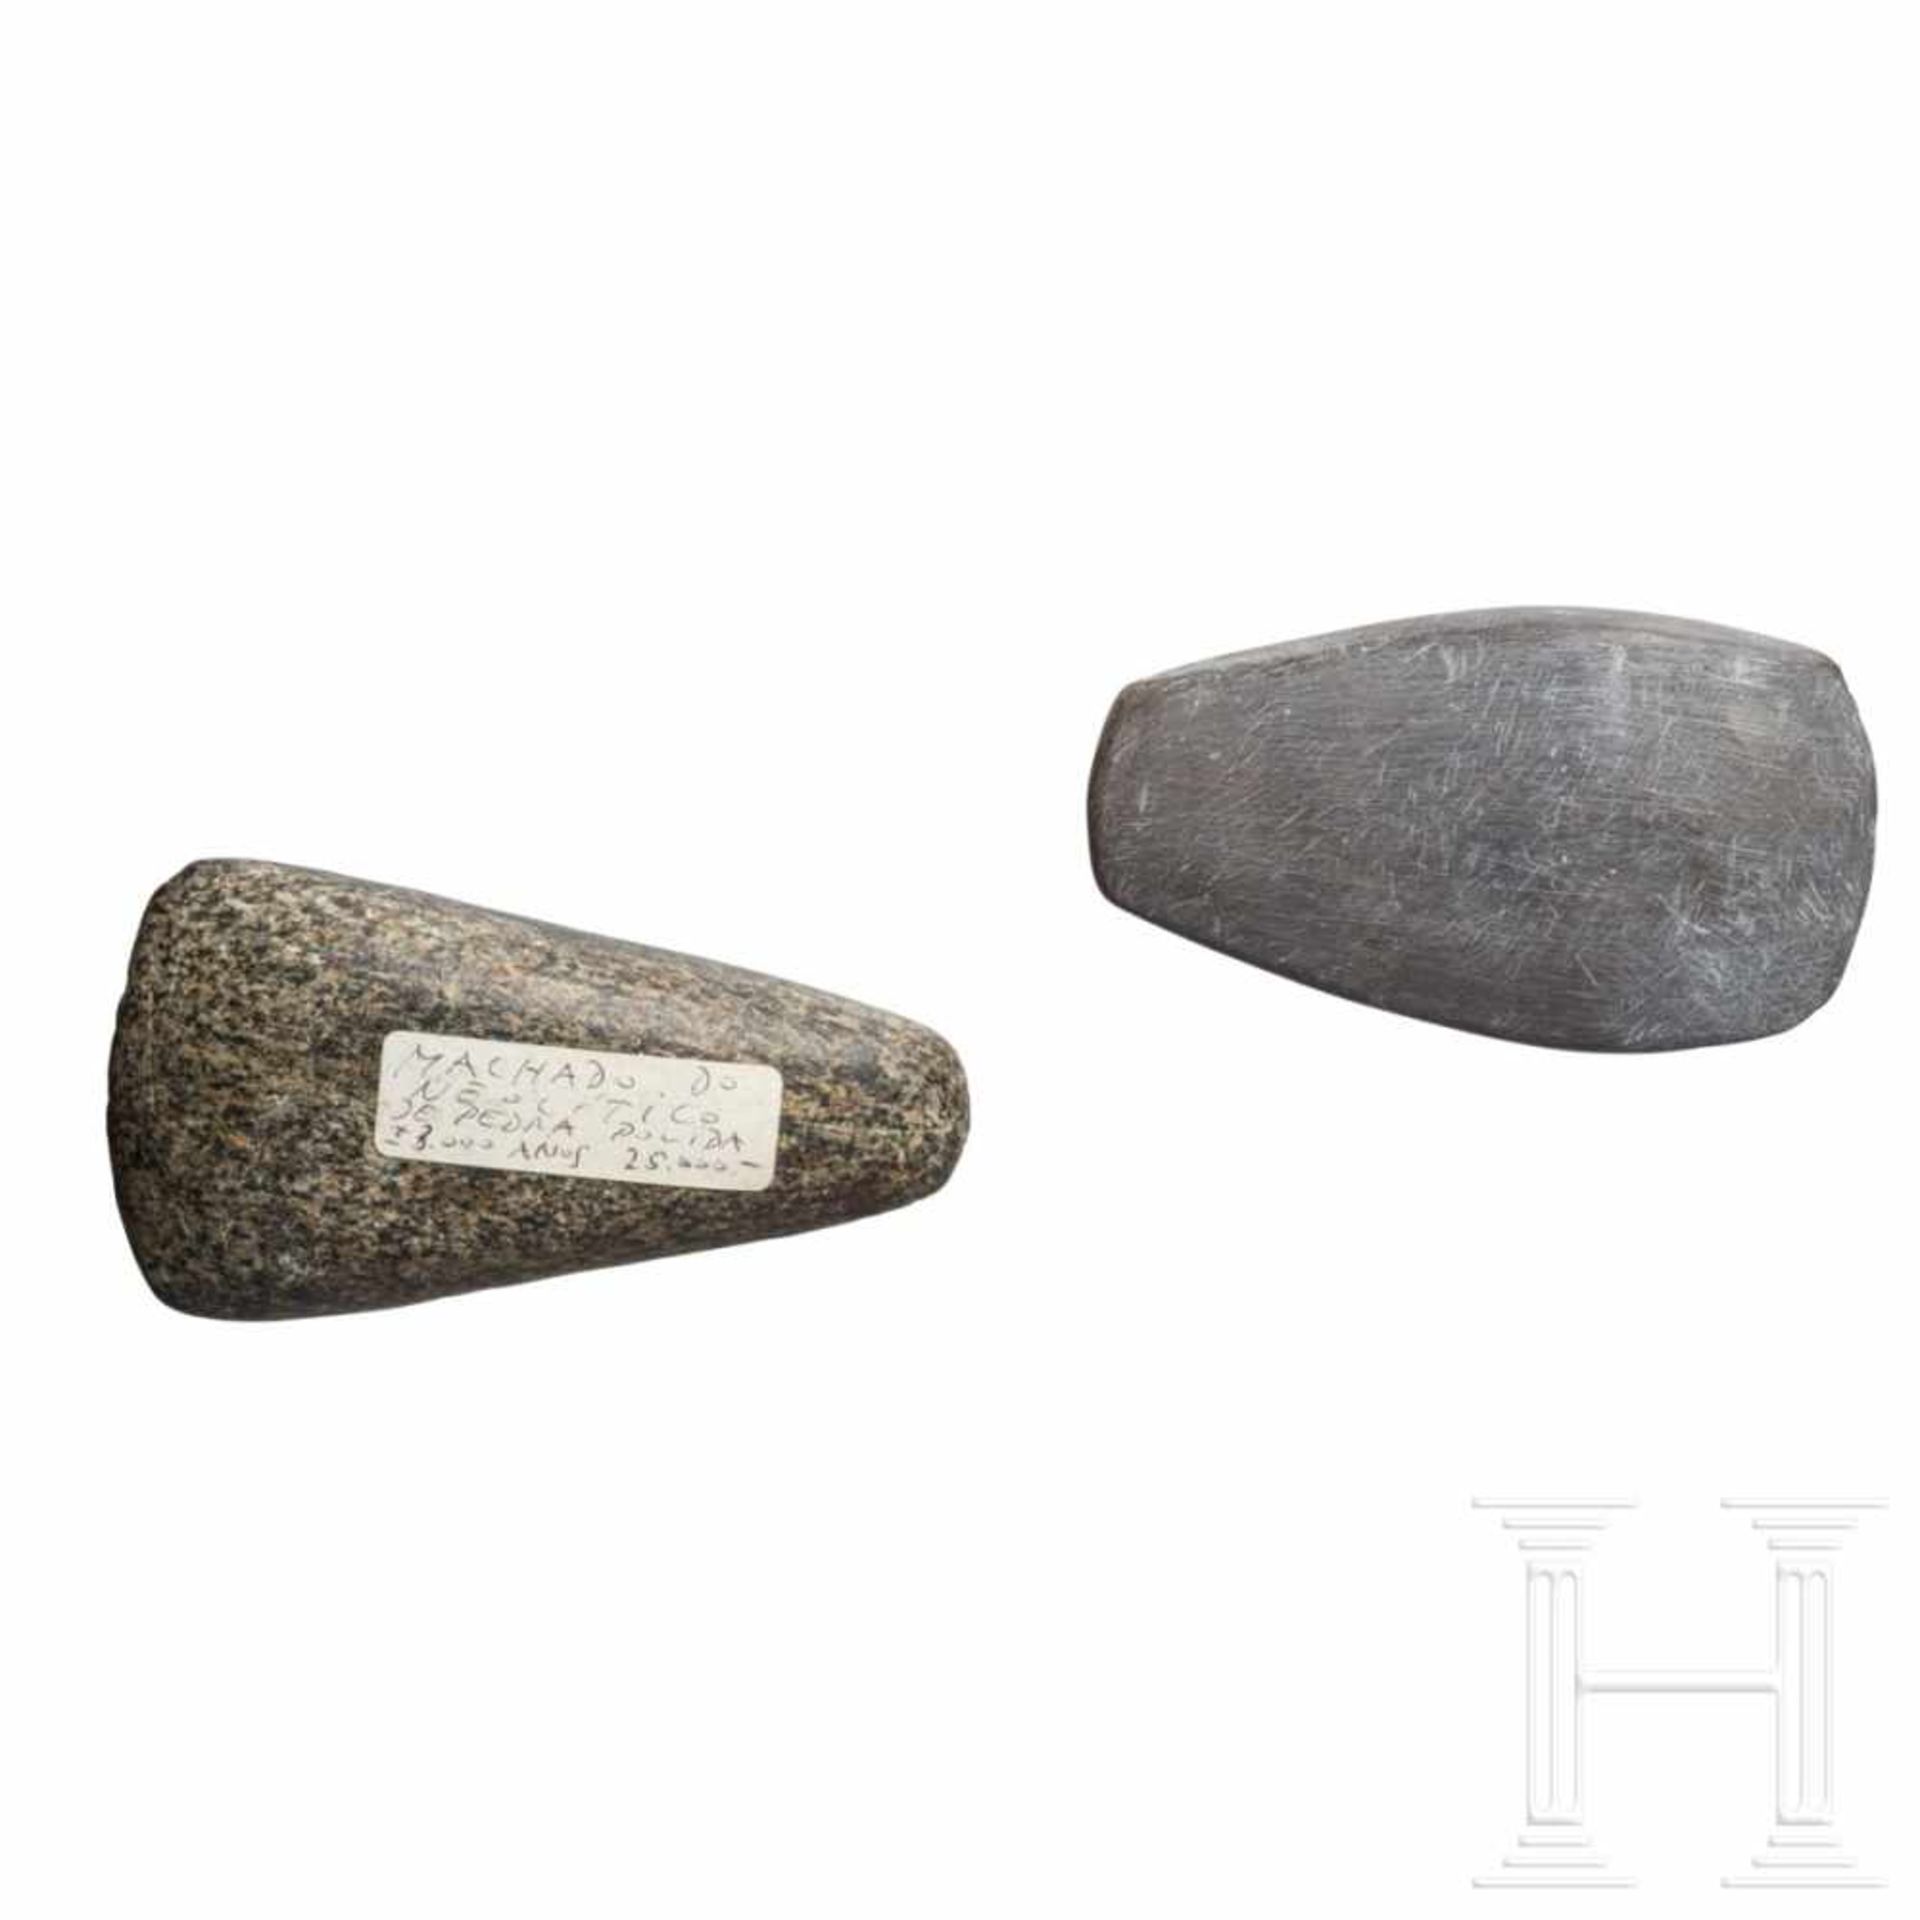 Zwei Steinbeile, Westeuropa, Neolithikum, ca. 5000 v. Chr. - Bild 2 aus 2